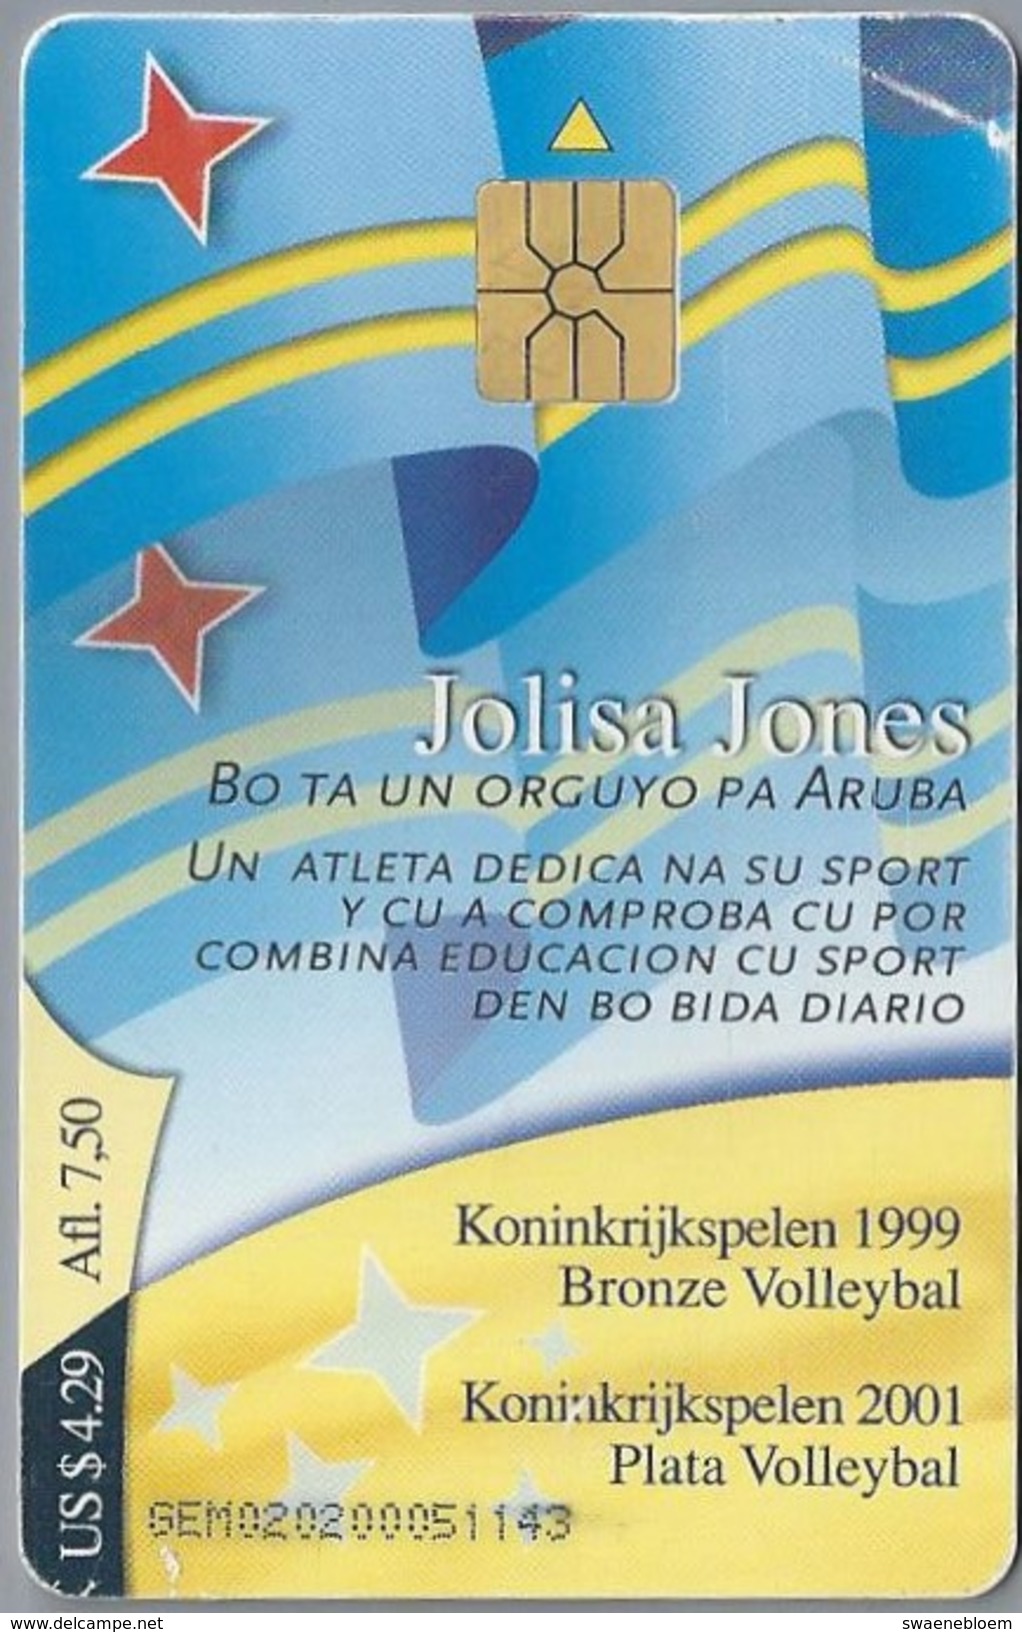 Telefoonkaart. ARUBA PHONE CARD. JULISA JONES. Koninkrijkspelen 1999. 2 Scans - Antillen (Niederländische)